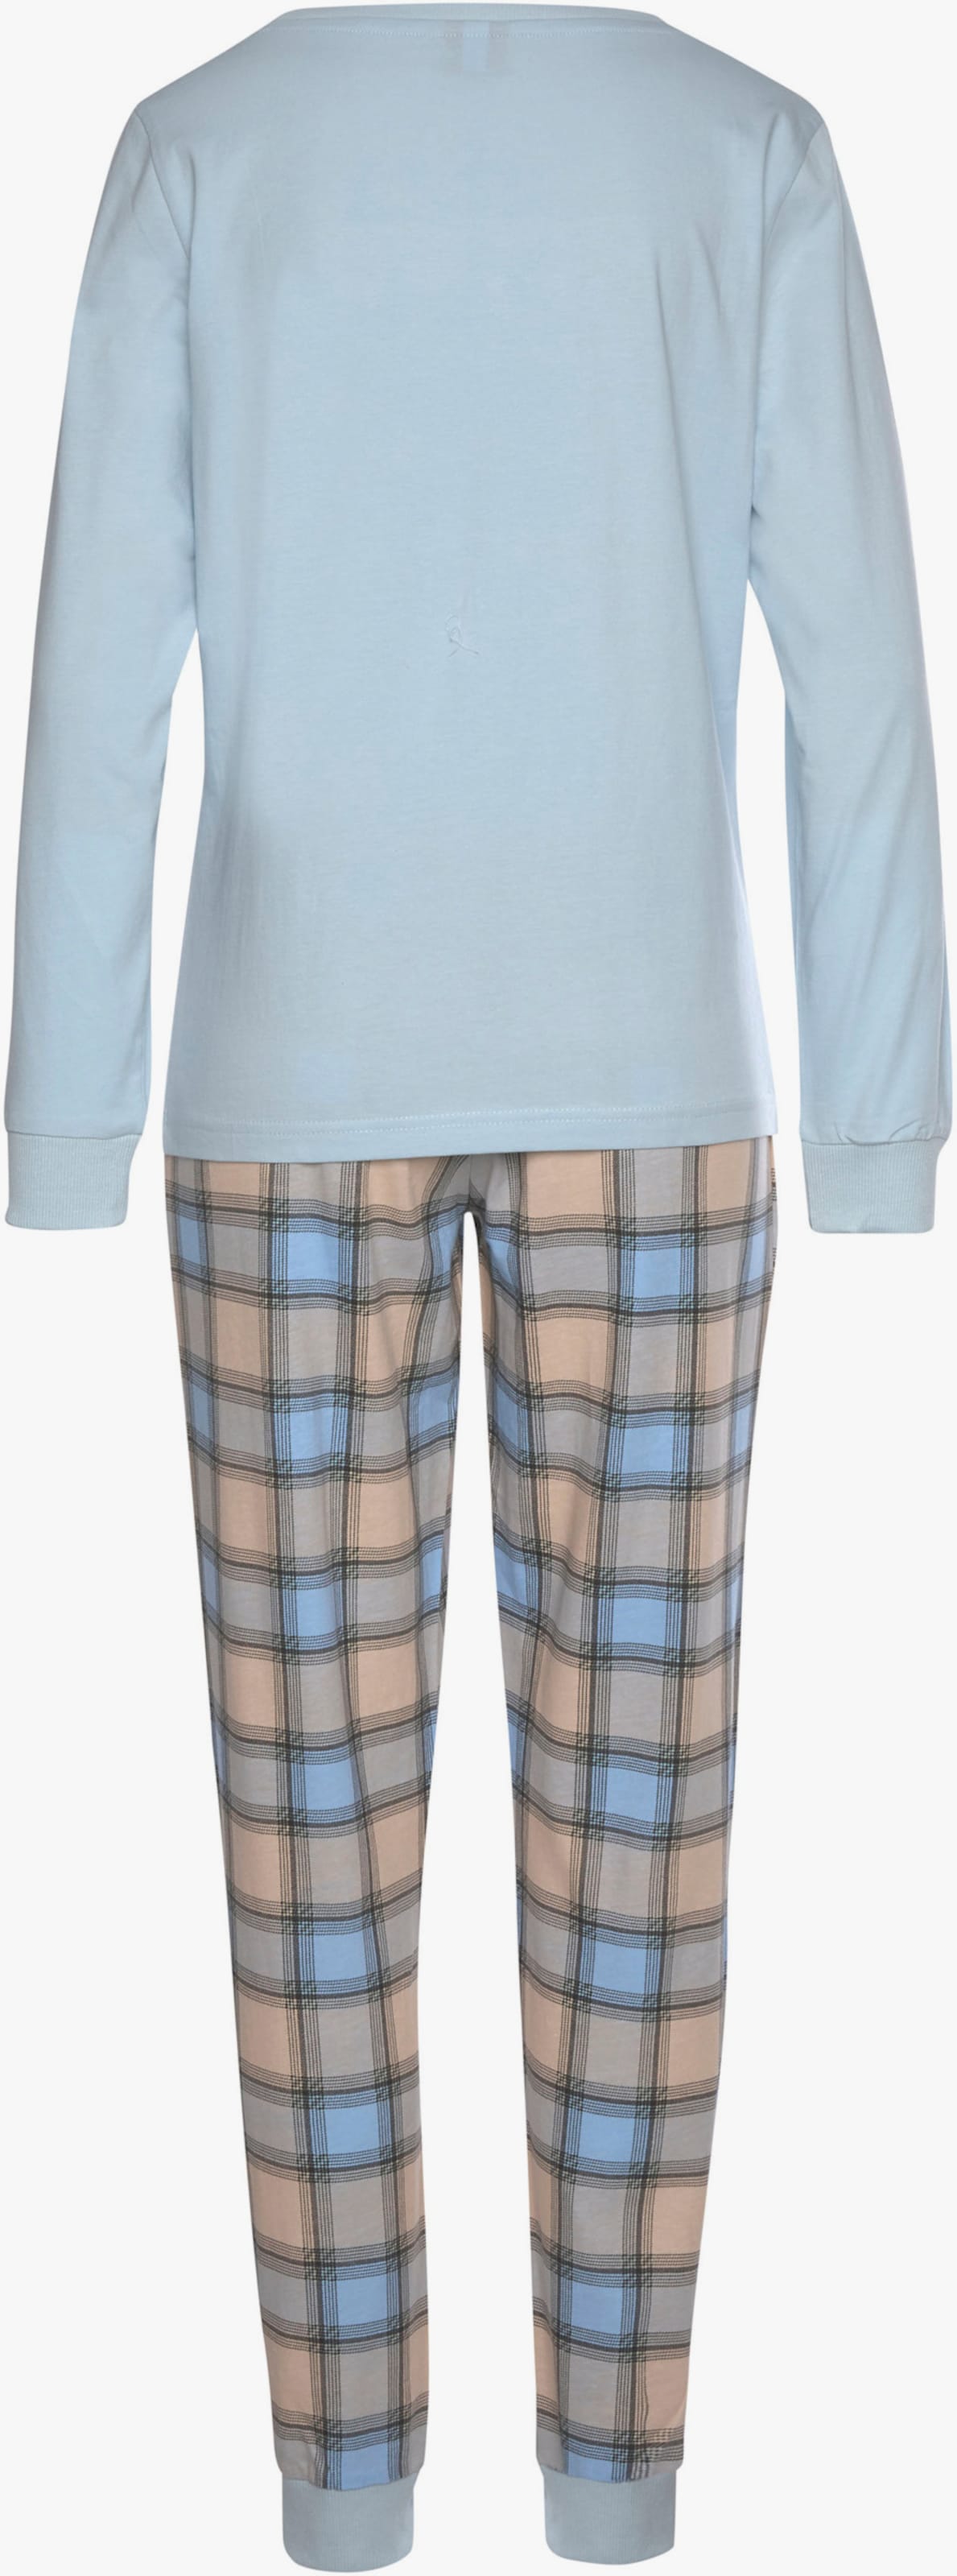 Vivance Dreams Pyjama - bordeaux à carreaux, bleu clair à carreaux